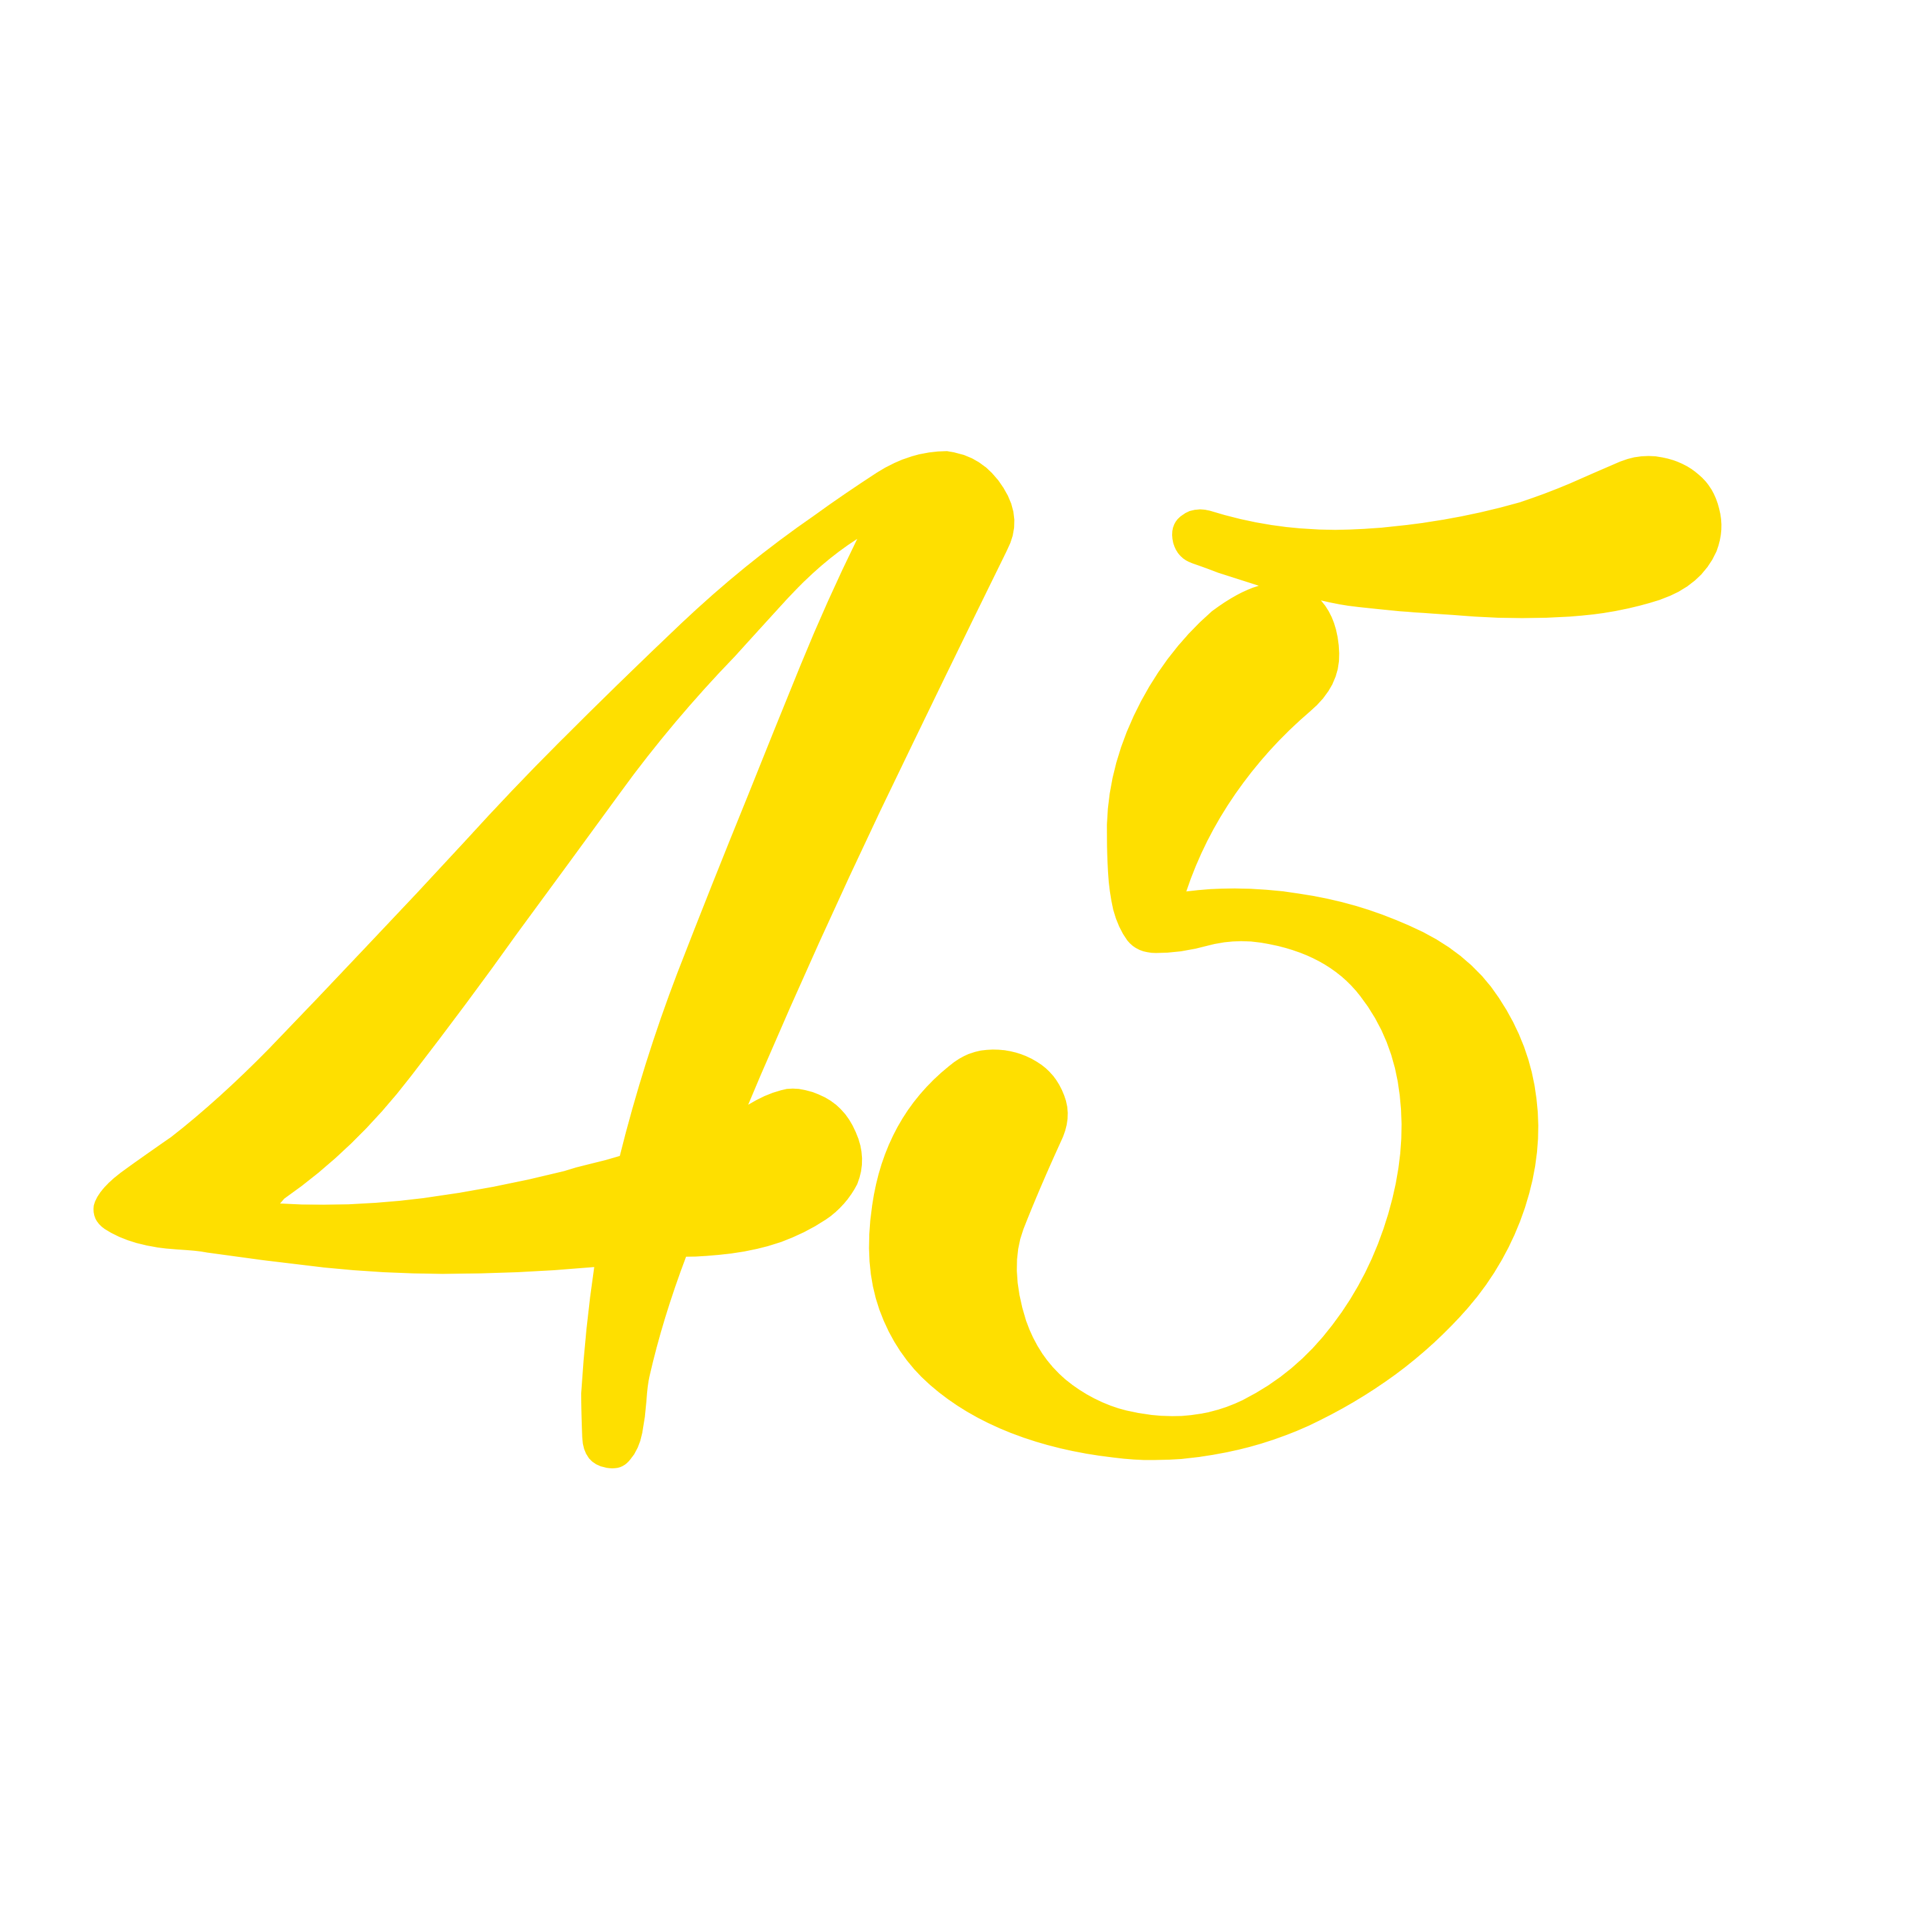 45 freetoedit #45 sticker by @isakcordeiro6